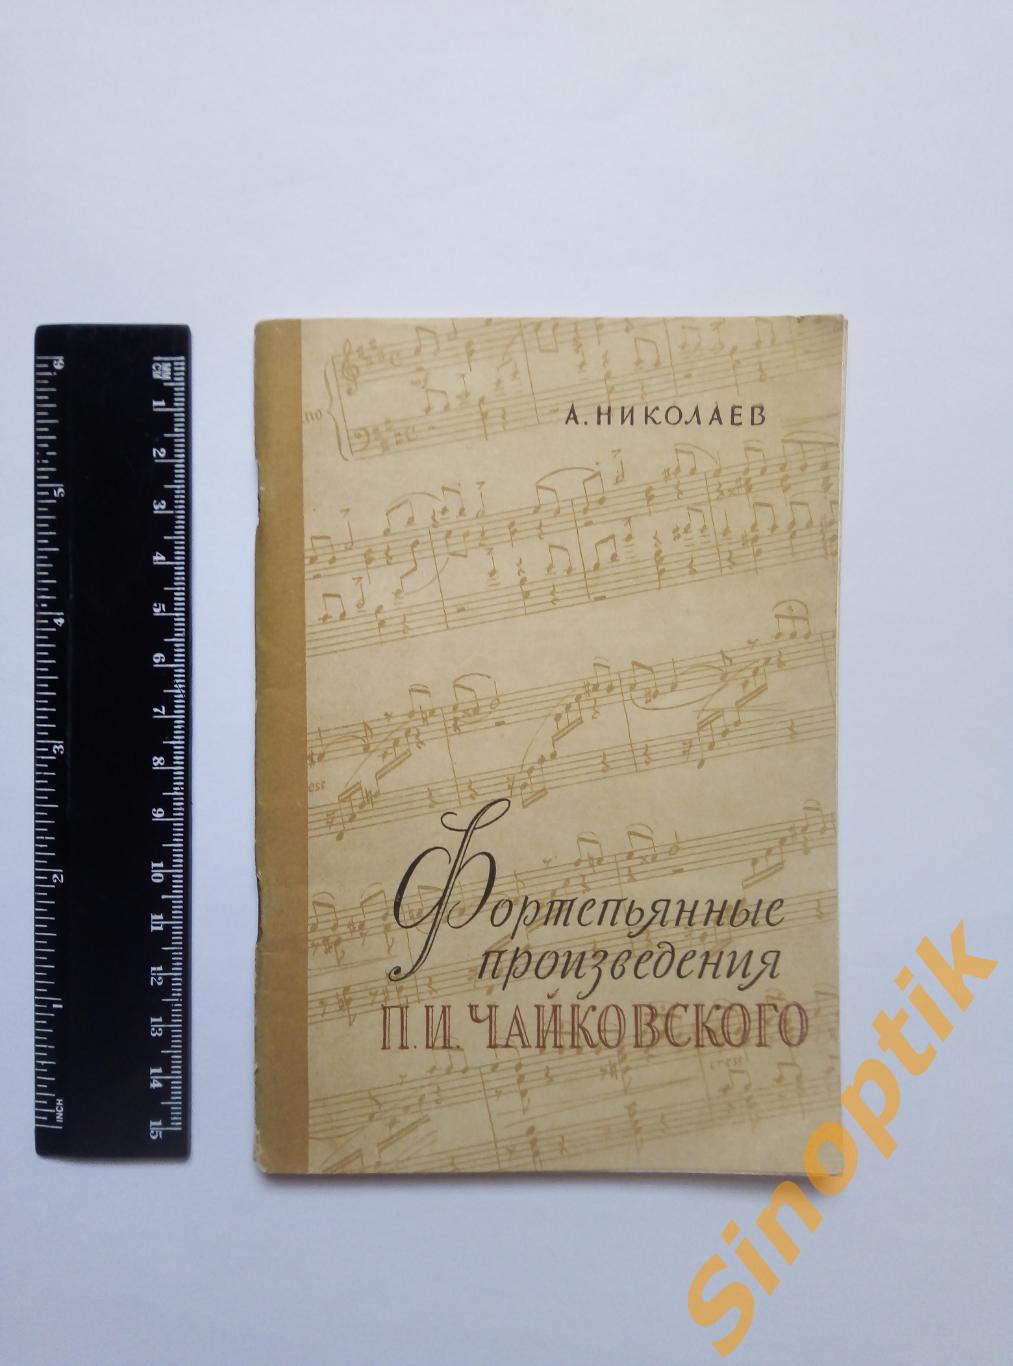 Фортепьянные произведения П. И. Чайковского, А. Николаев. 1957